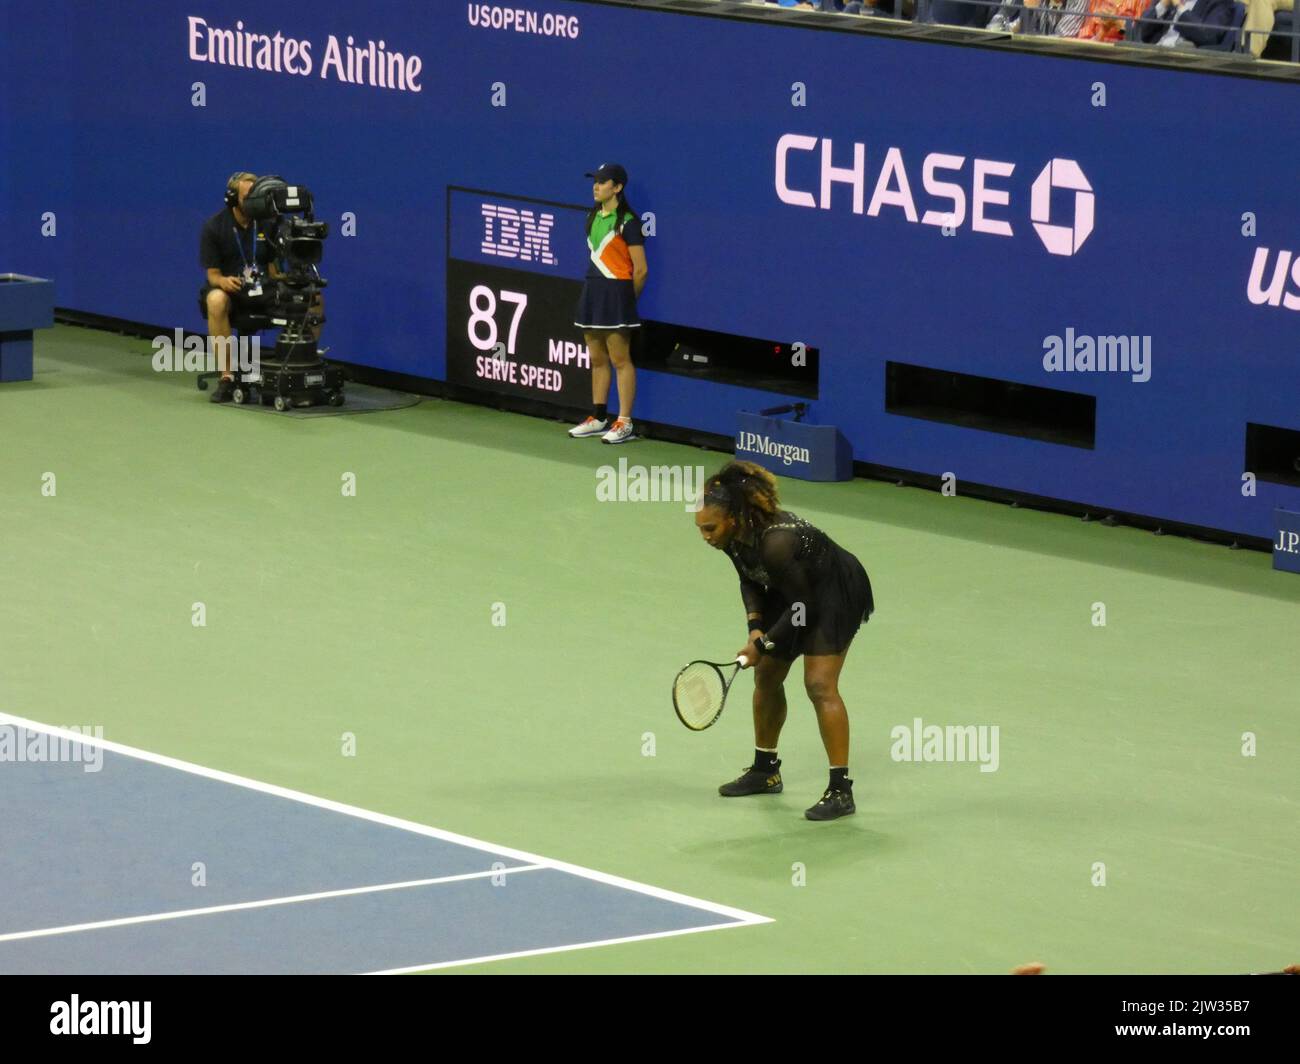 New York, Stati Uniti. 03rd Set, 2022. 2022 US Open Tennis Championship, Flushing Meadows, NY, USA. 2 Settembre 2022. Probabilmente gareggiando per l'ultima volta nella sua carriera al torneo US Open di tennis 2022, la leggenda del tennis Grand Slam Serena Williams cede con grazia allo sfidante di nuova generazione, Ajla Tomljanovic in tre emozionanti set 7-5, 6-7(4), 6-1, durante il 3rd° turno di gioco del torneo. La Williams ha quindi lasciato un po' inaspettatamente il sito dei suoi precedenti trionfi in un primo momento in un US Open Championship, un luogo che in precedenza era considerato il suo territorio indiscusso. Credito: ©Julia M Foto Stock